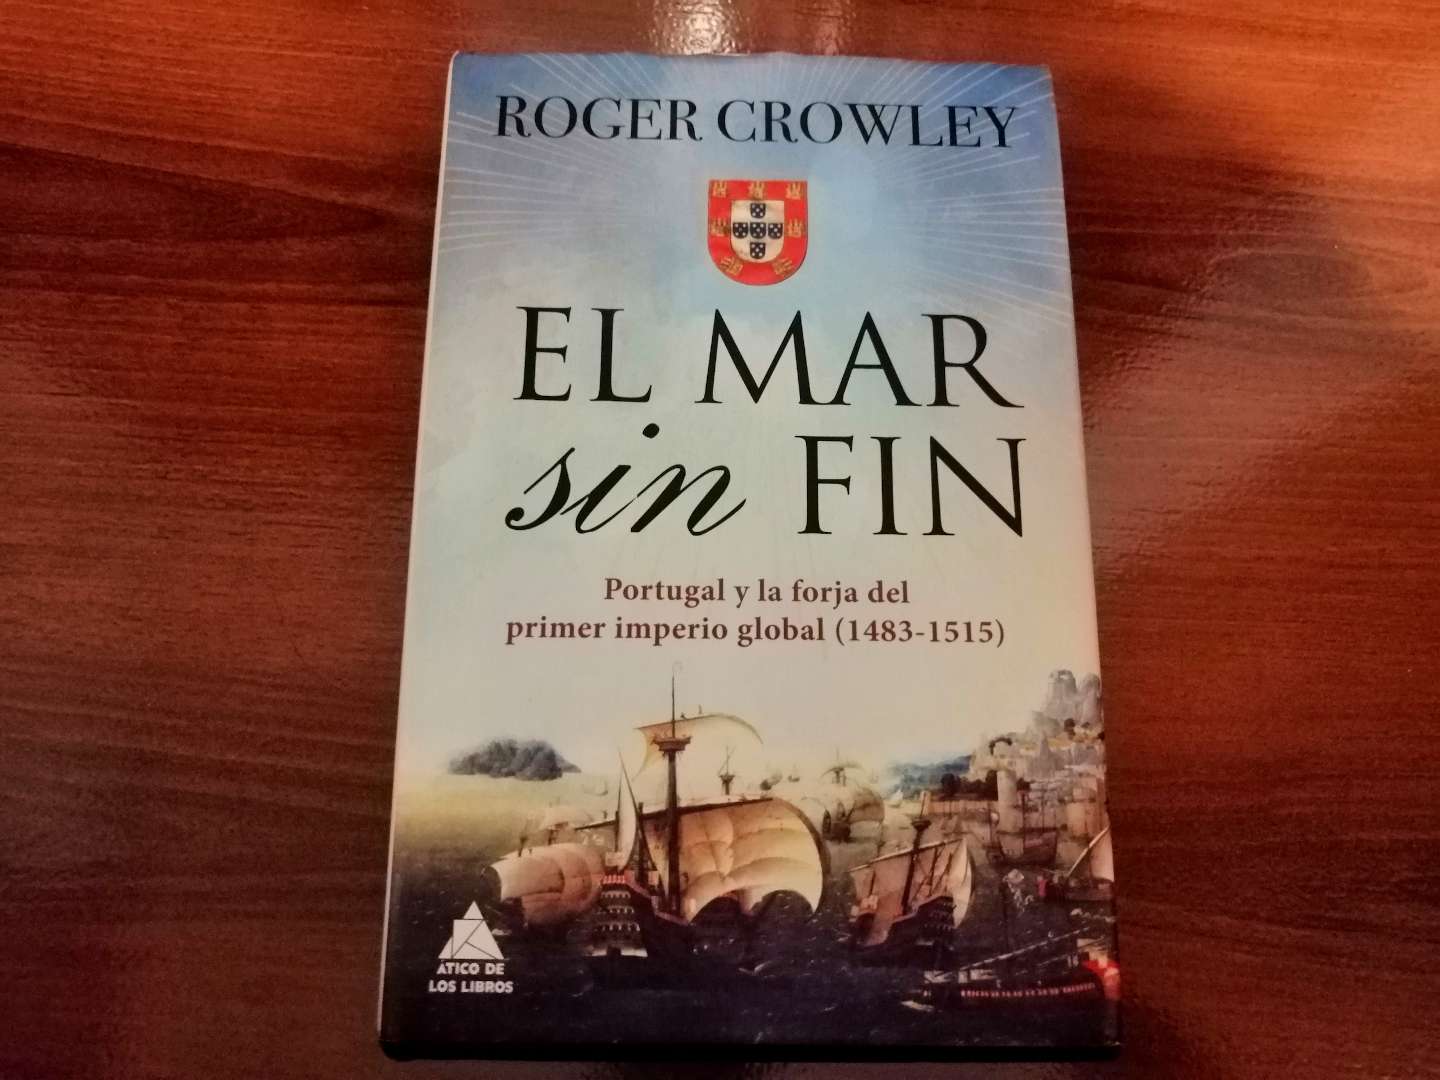 El mar sin fin - Portugal y la forja del primer imperio global, de Roger Crowley (edición española).